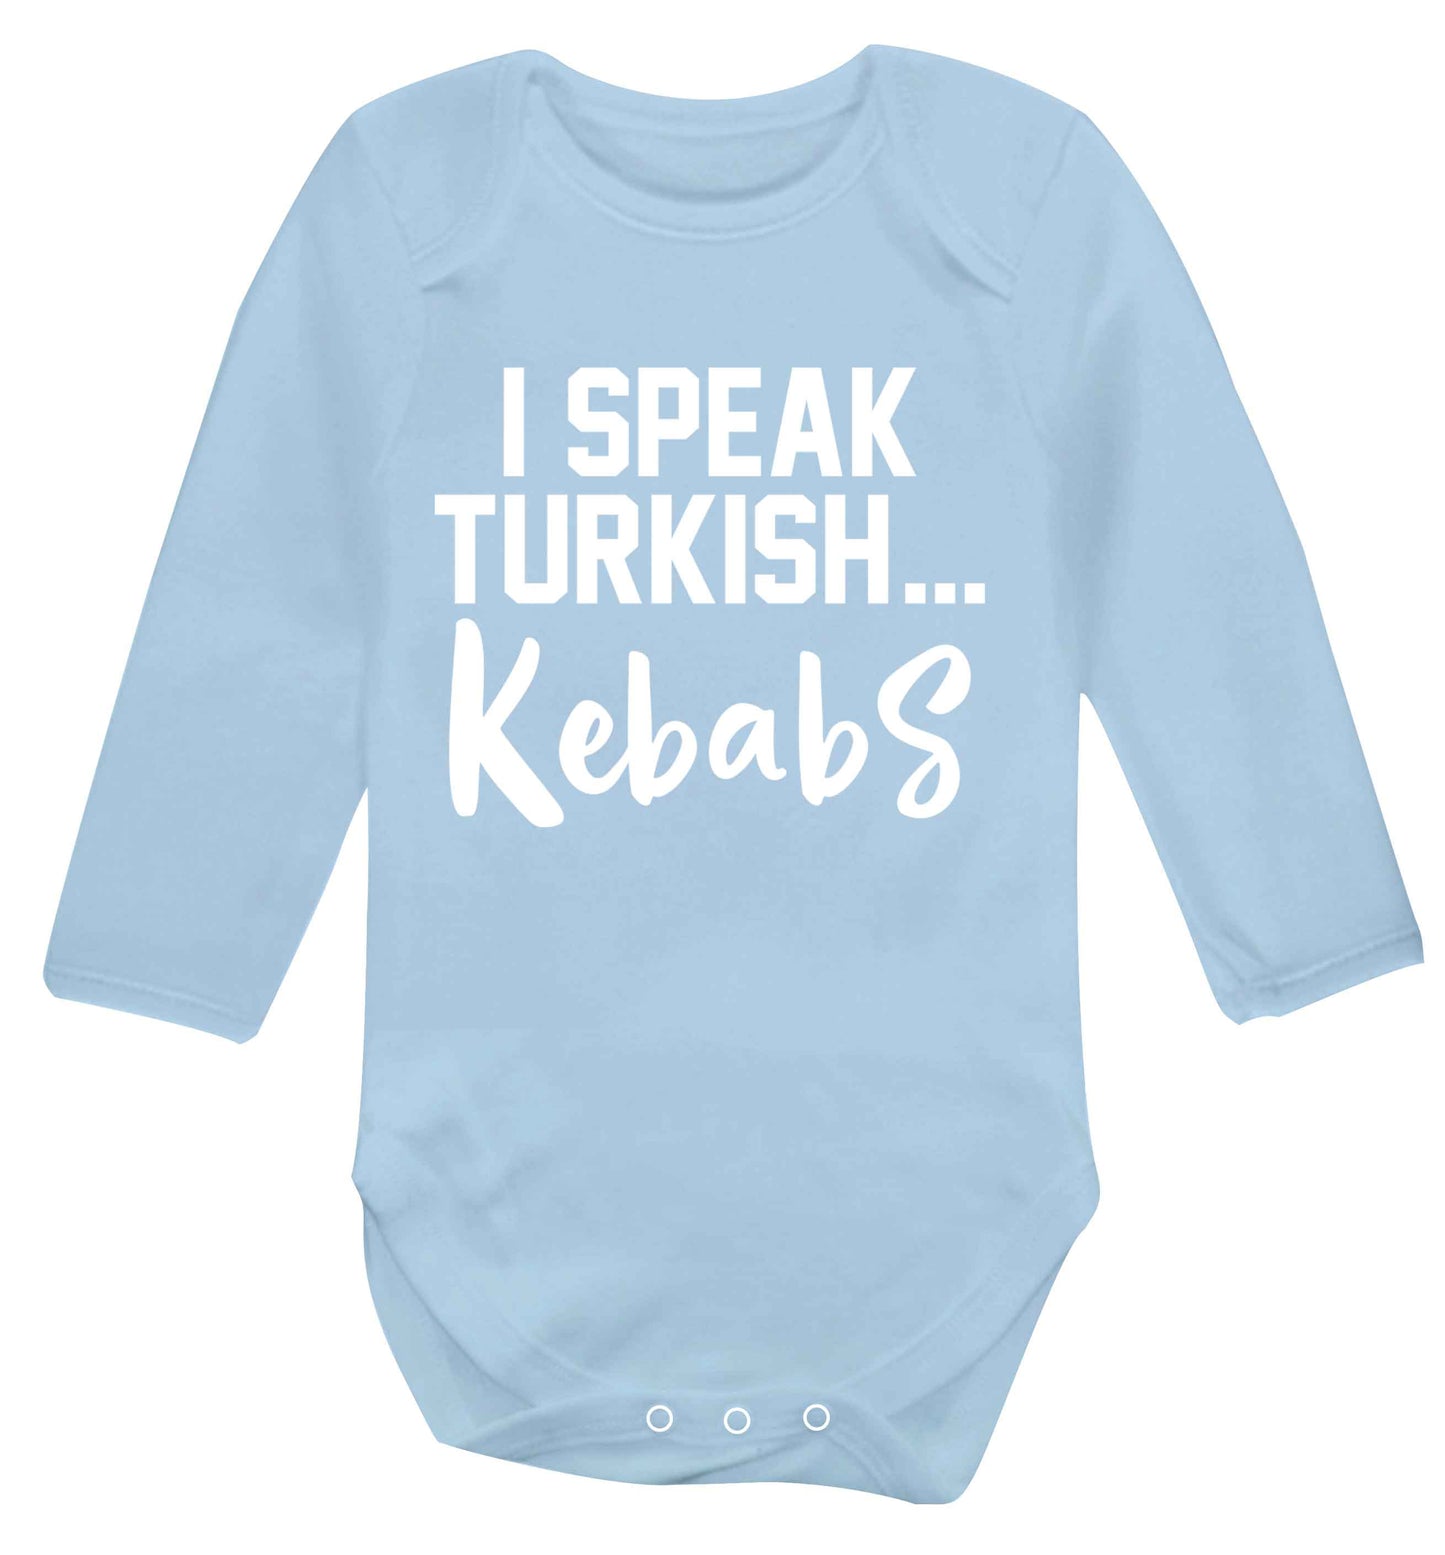 I speak Turkish...kebabs Baby Vest long sleeved pale blue 6-12 months